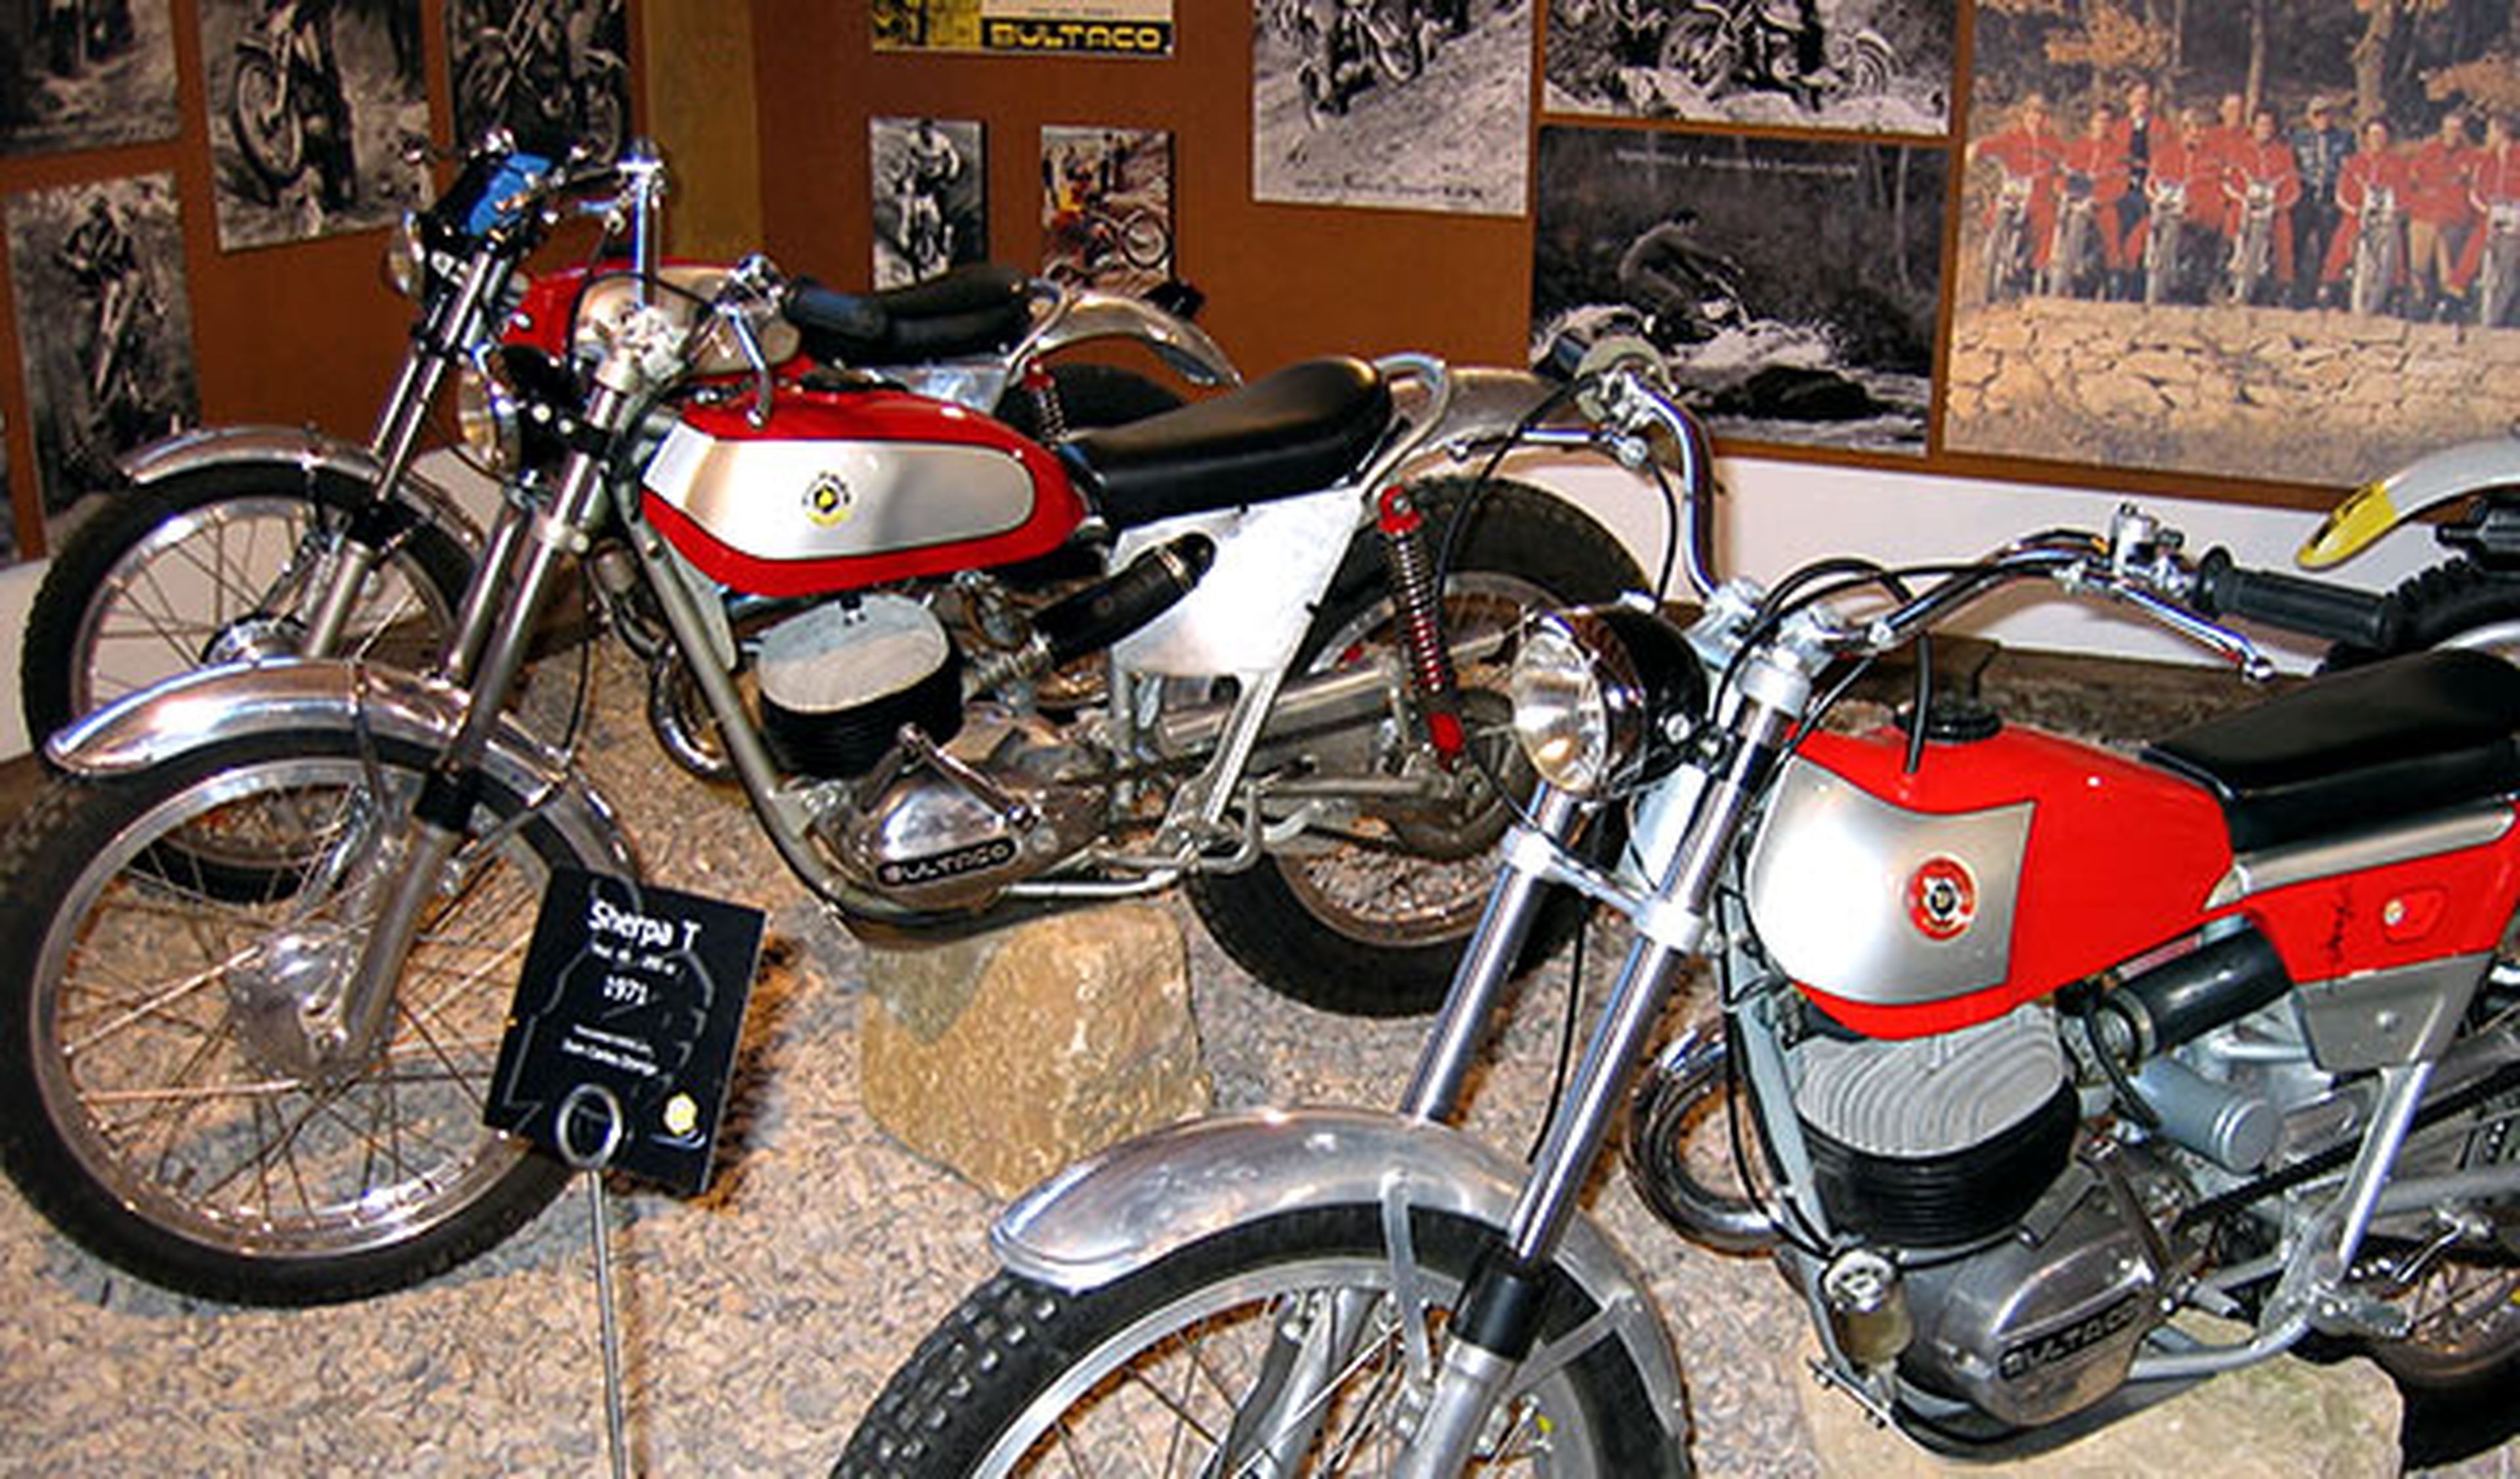 Vuelve Bultaco 2